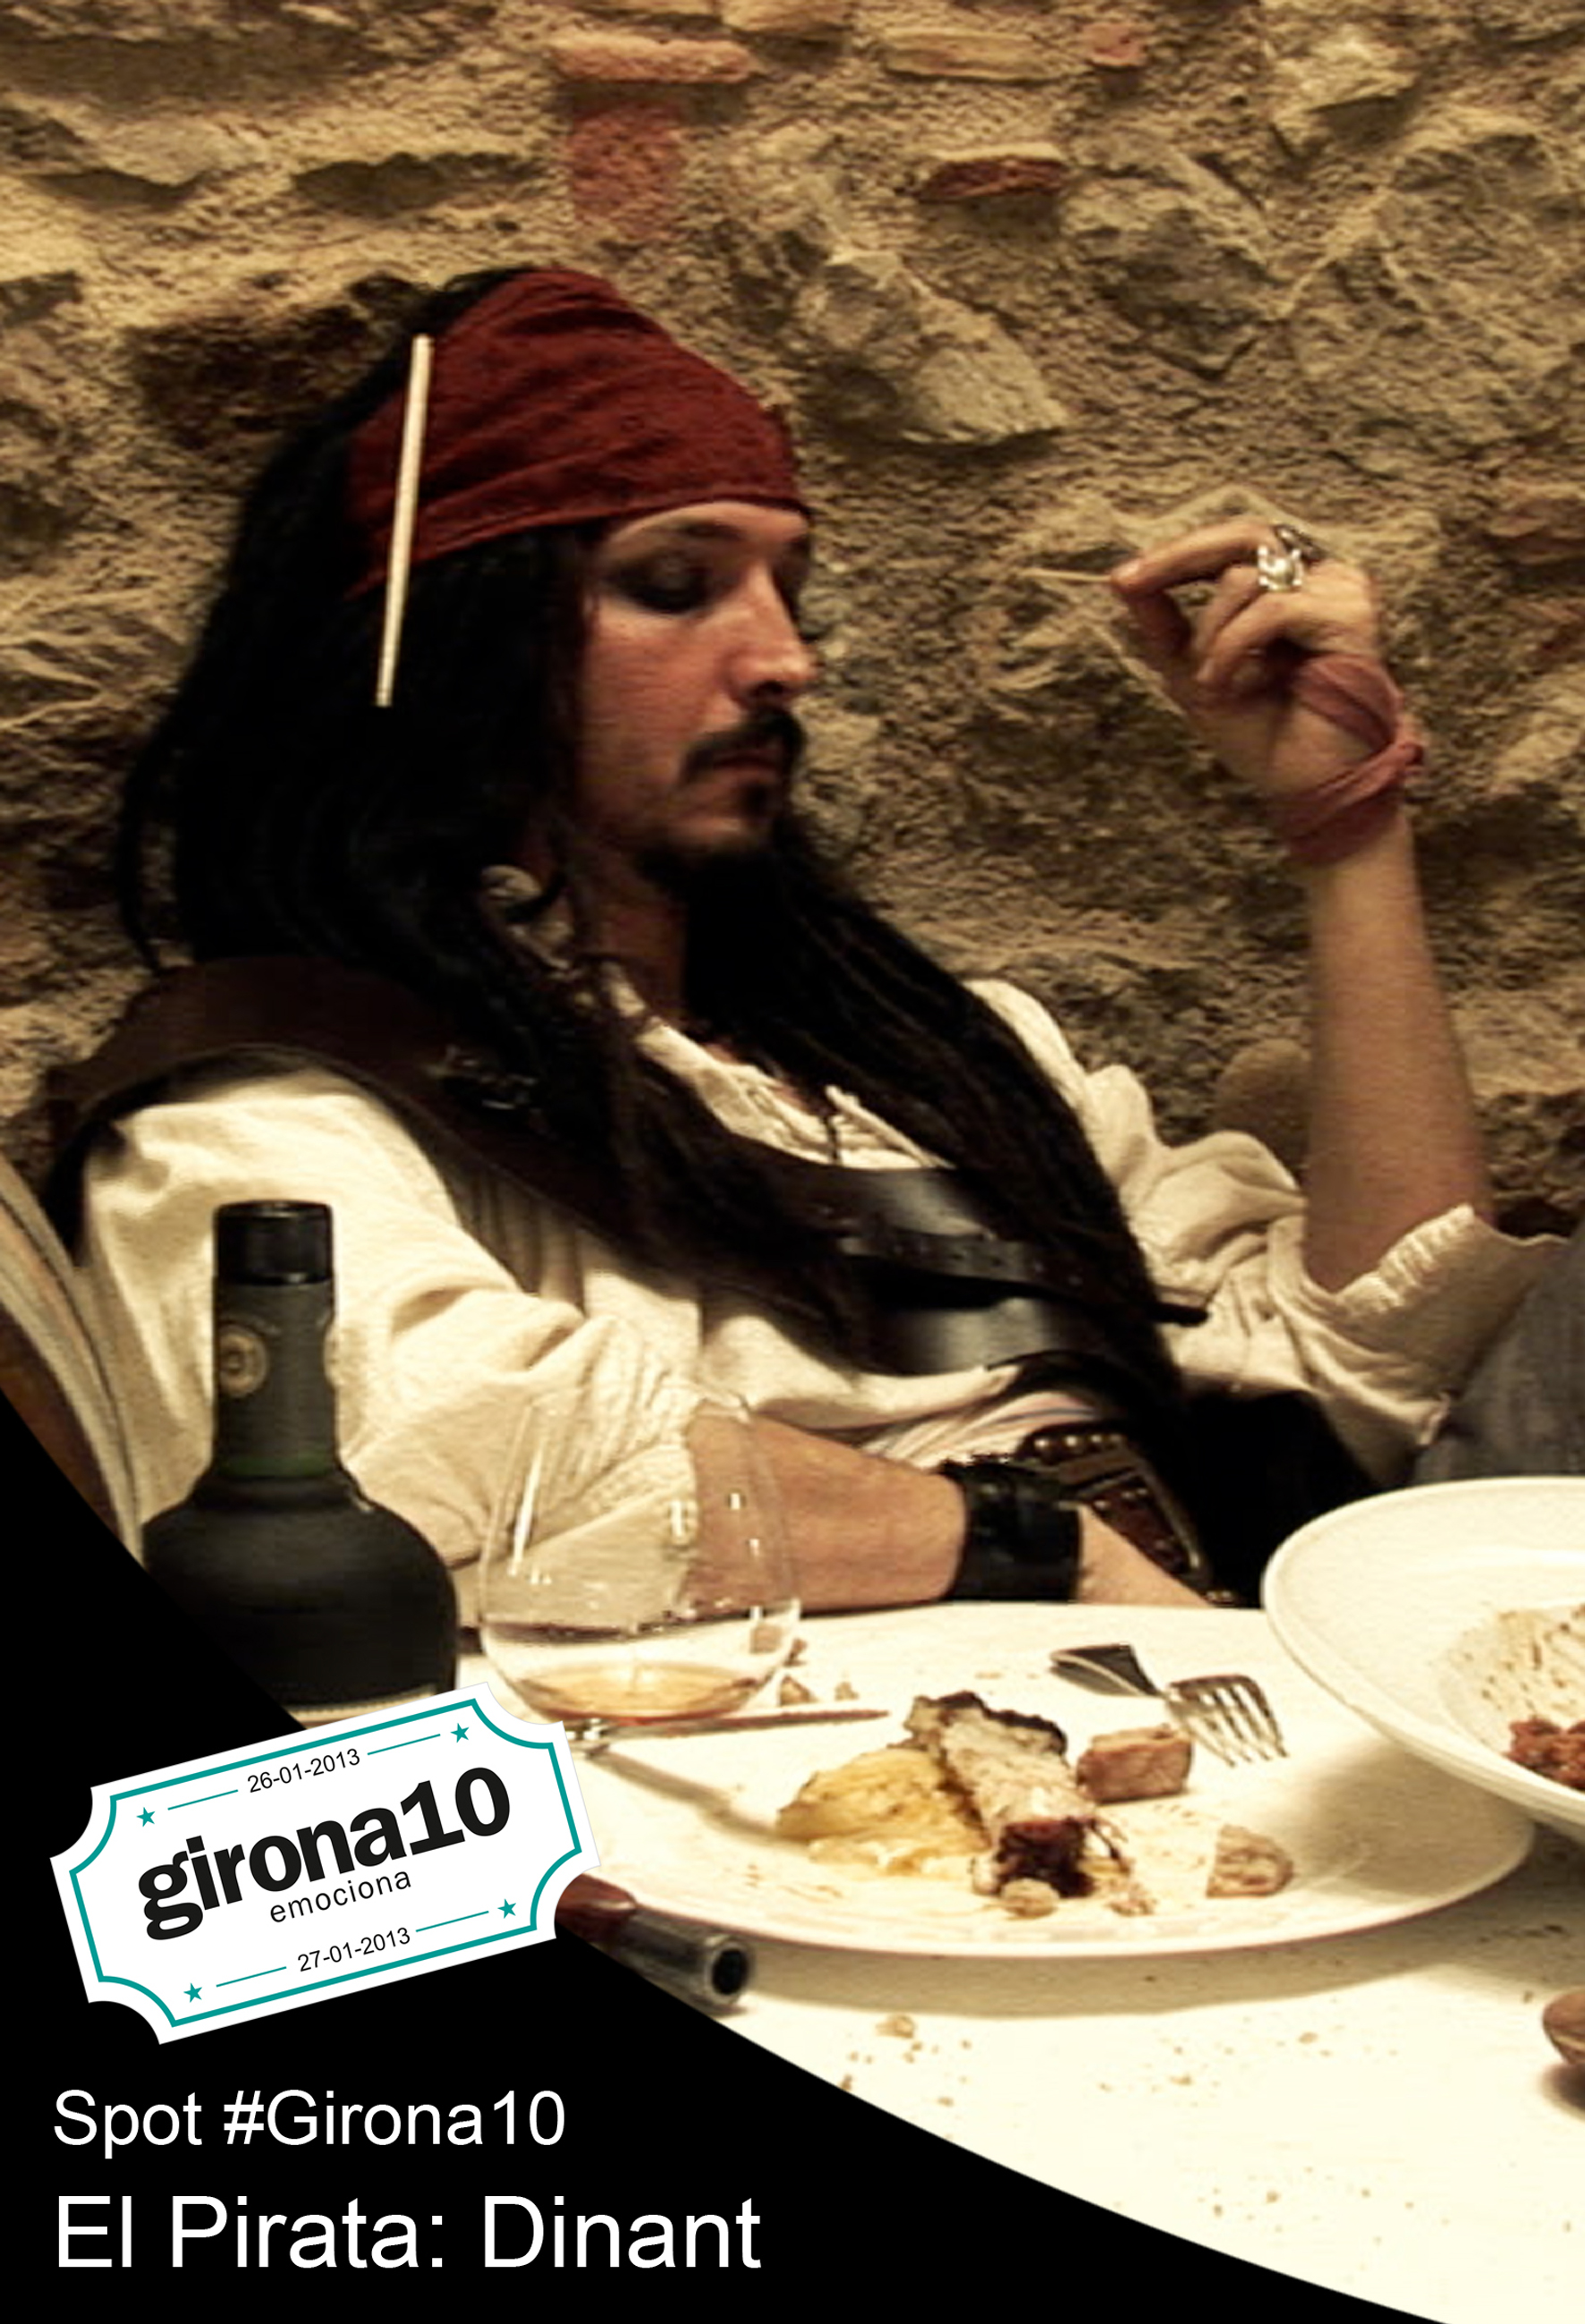 Girona10: el pirata - dinant